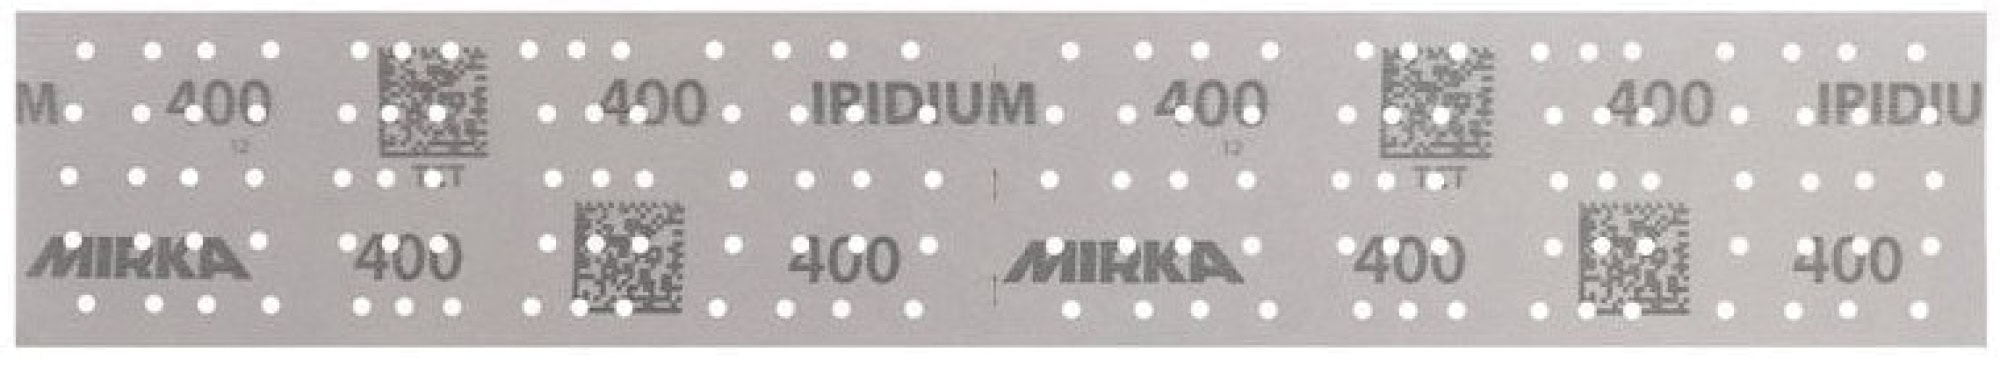 Mirka® Iridium® 246B205041, 70 mm x 400 mm, 2 mal in 70 x 198 mm Stücke perforiert, P400, Multilochung, Kletthaftend, Schleifstreifen mit Keramik- und Aluminiumkorn